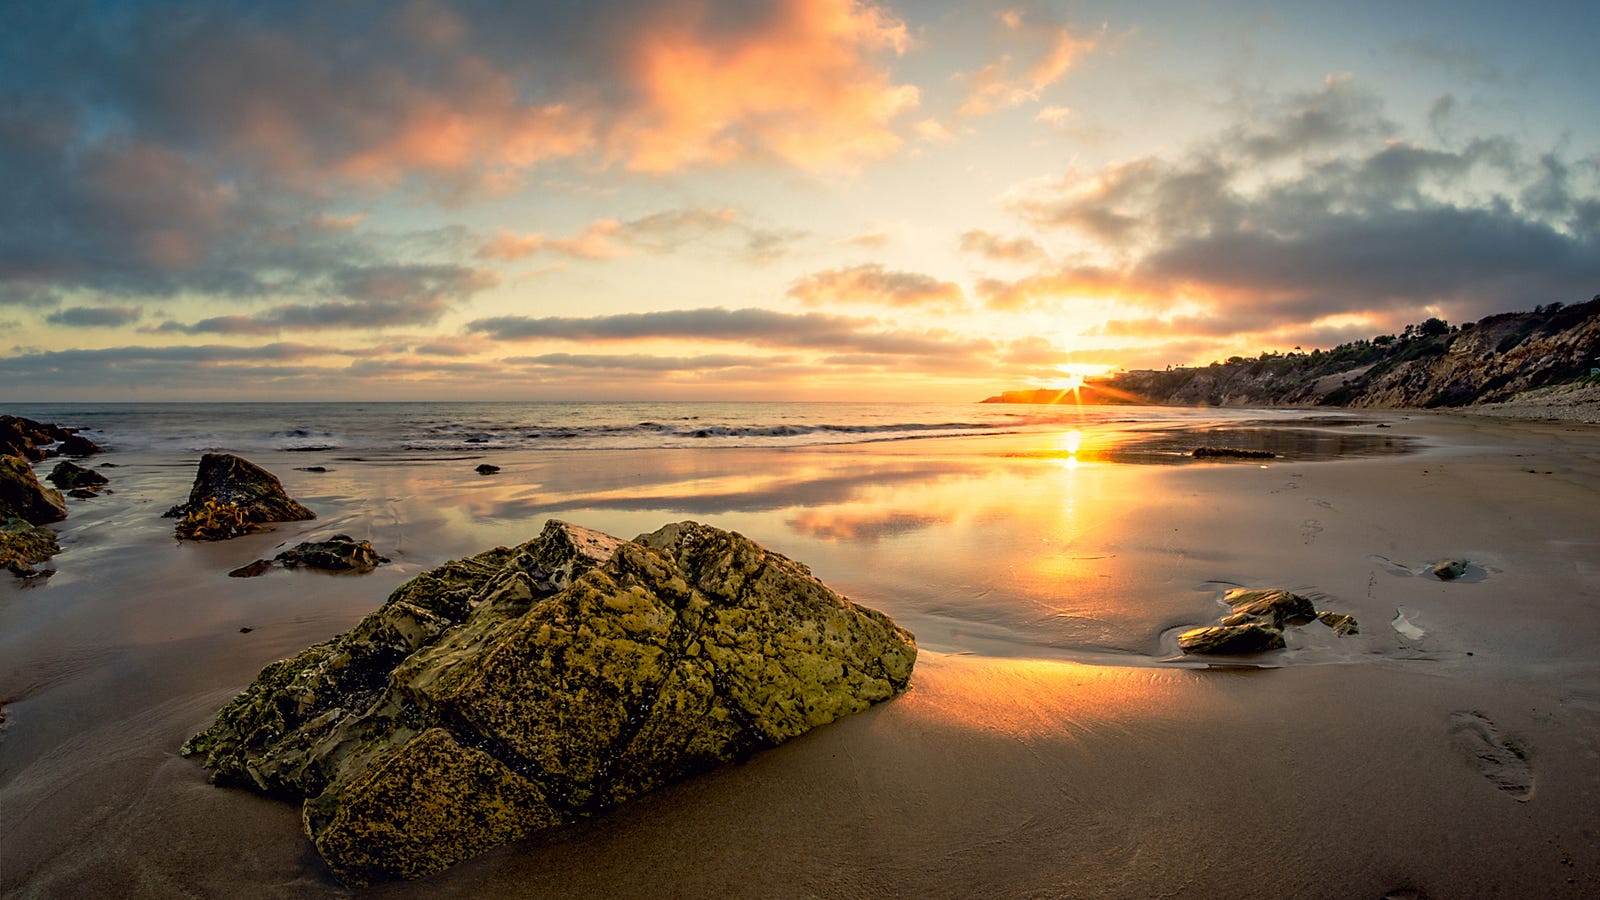 Sunset on the California coast